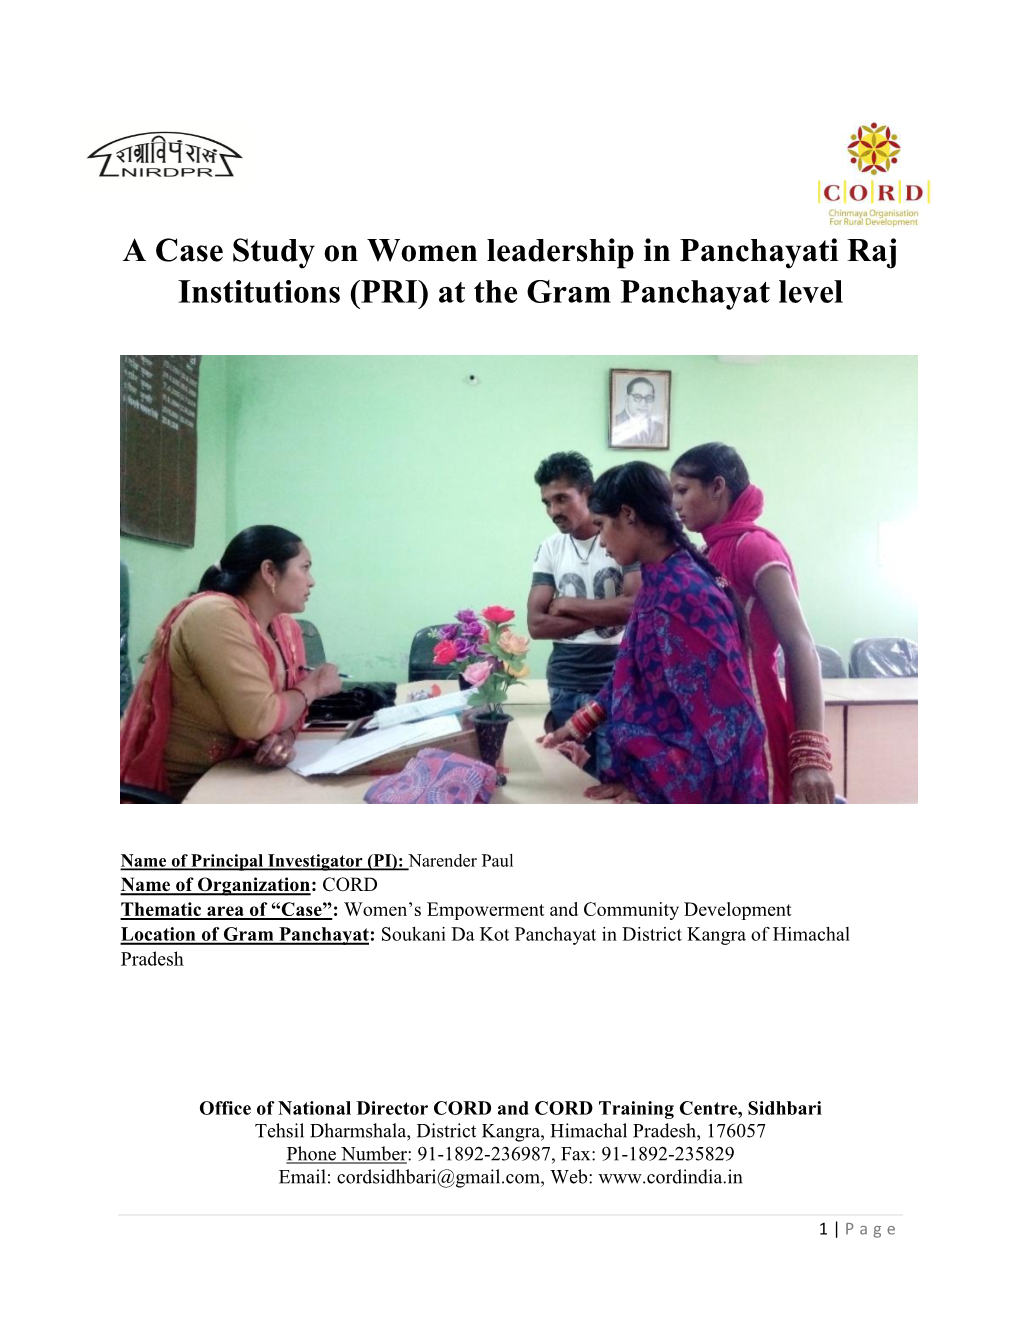 A Case Study of Women Leadership in Pris at Gram Panchayat